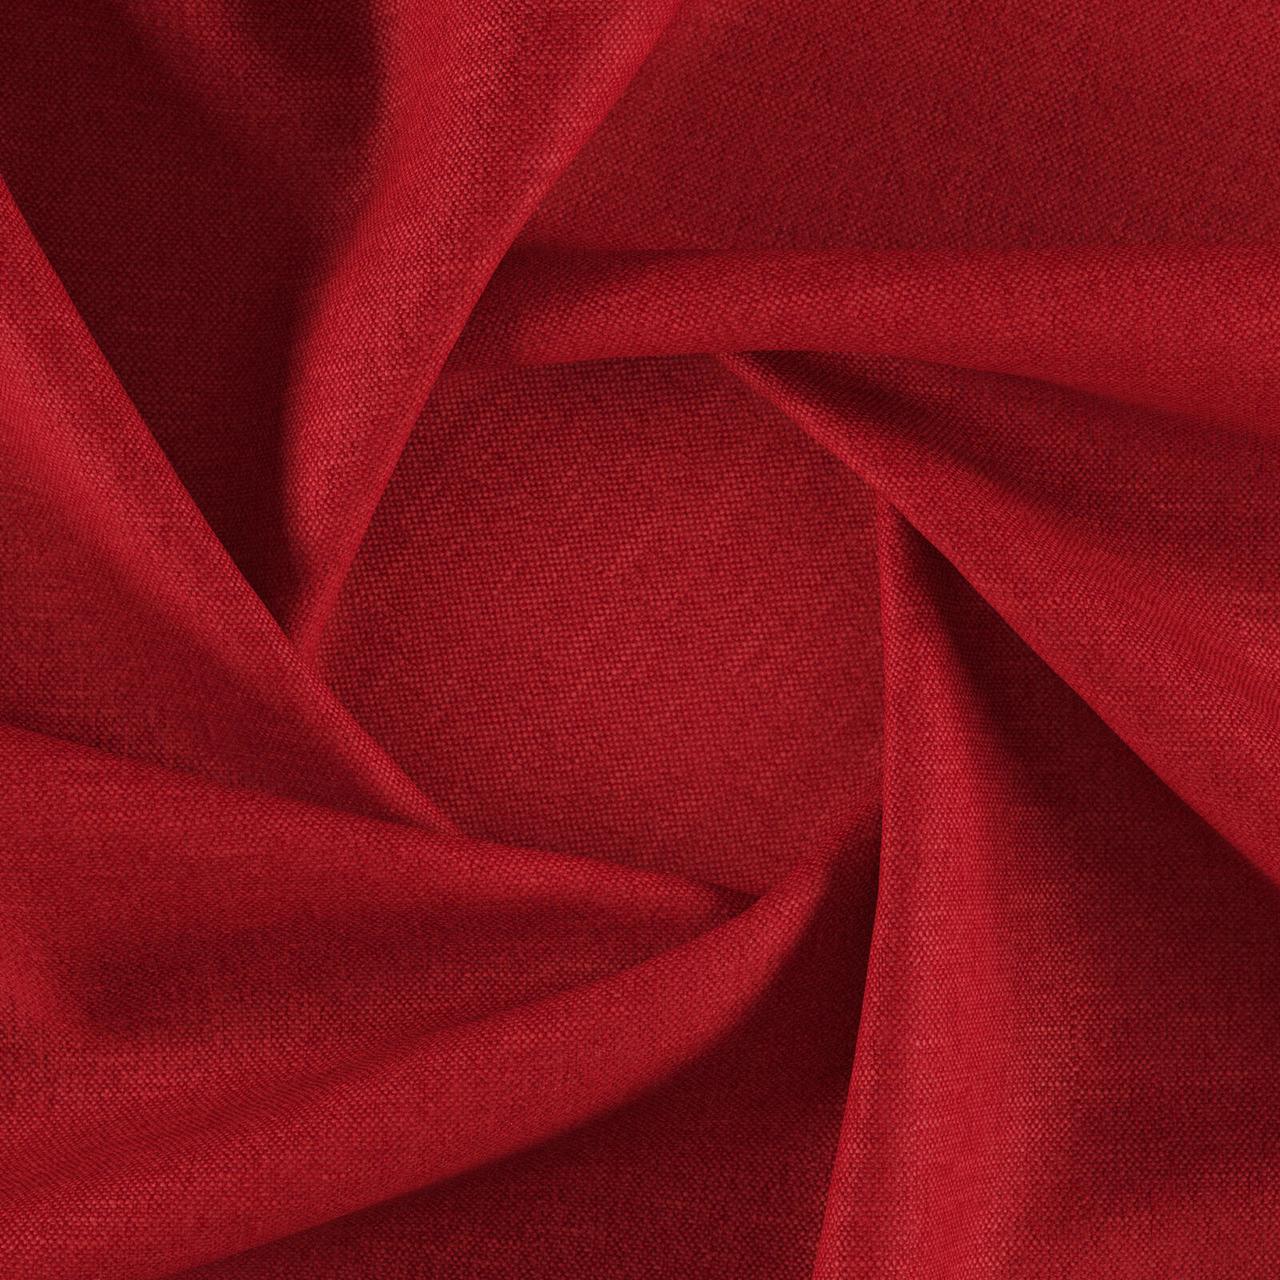 Тканина для перетяжки м'яких меблів шеніл Перфекто (Perfecto) червоного кольору